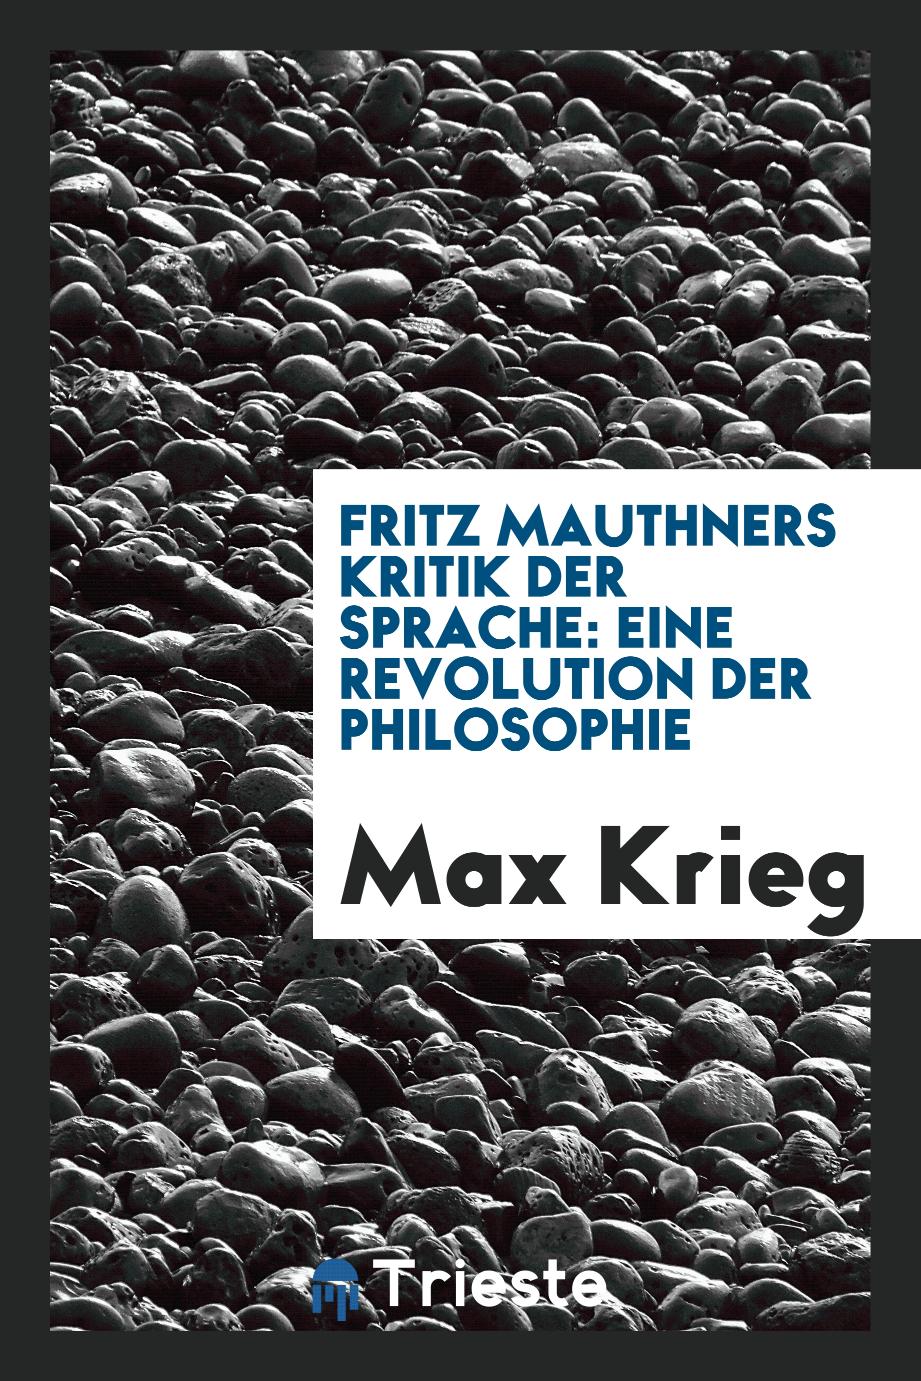 Fritz Mauthners Kritik der Sprache: eine Revolution der Philosophie